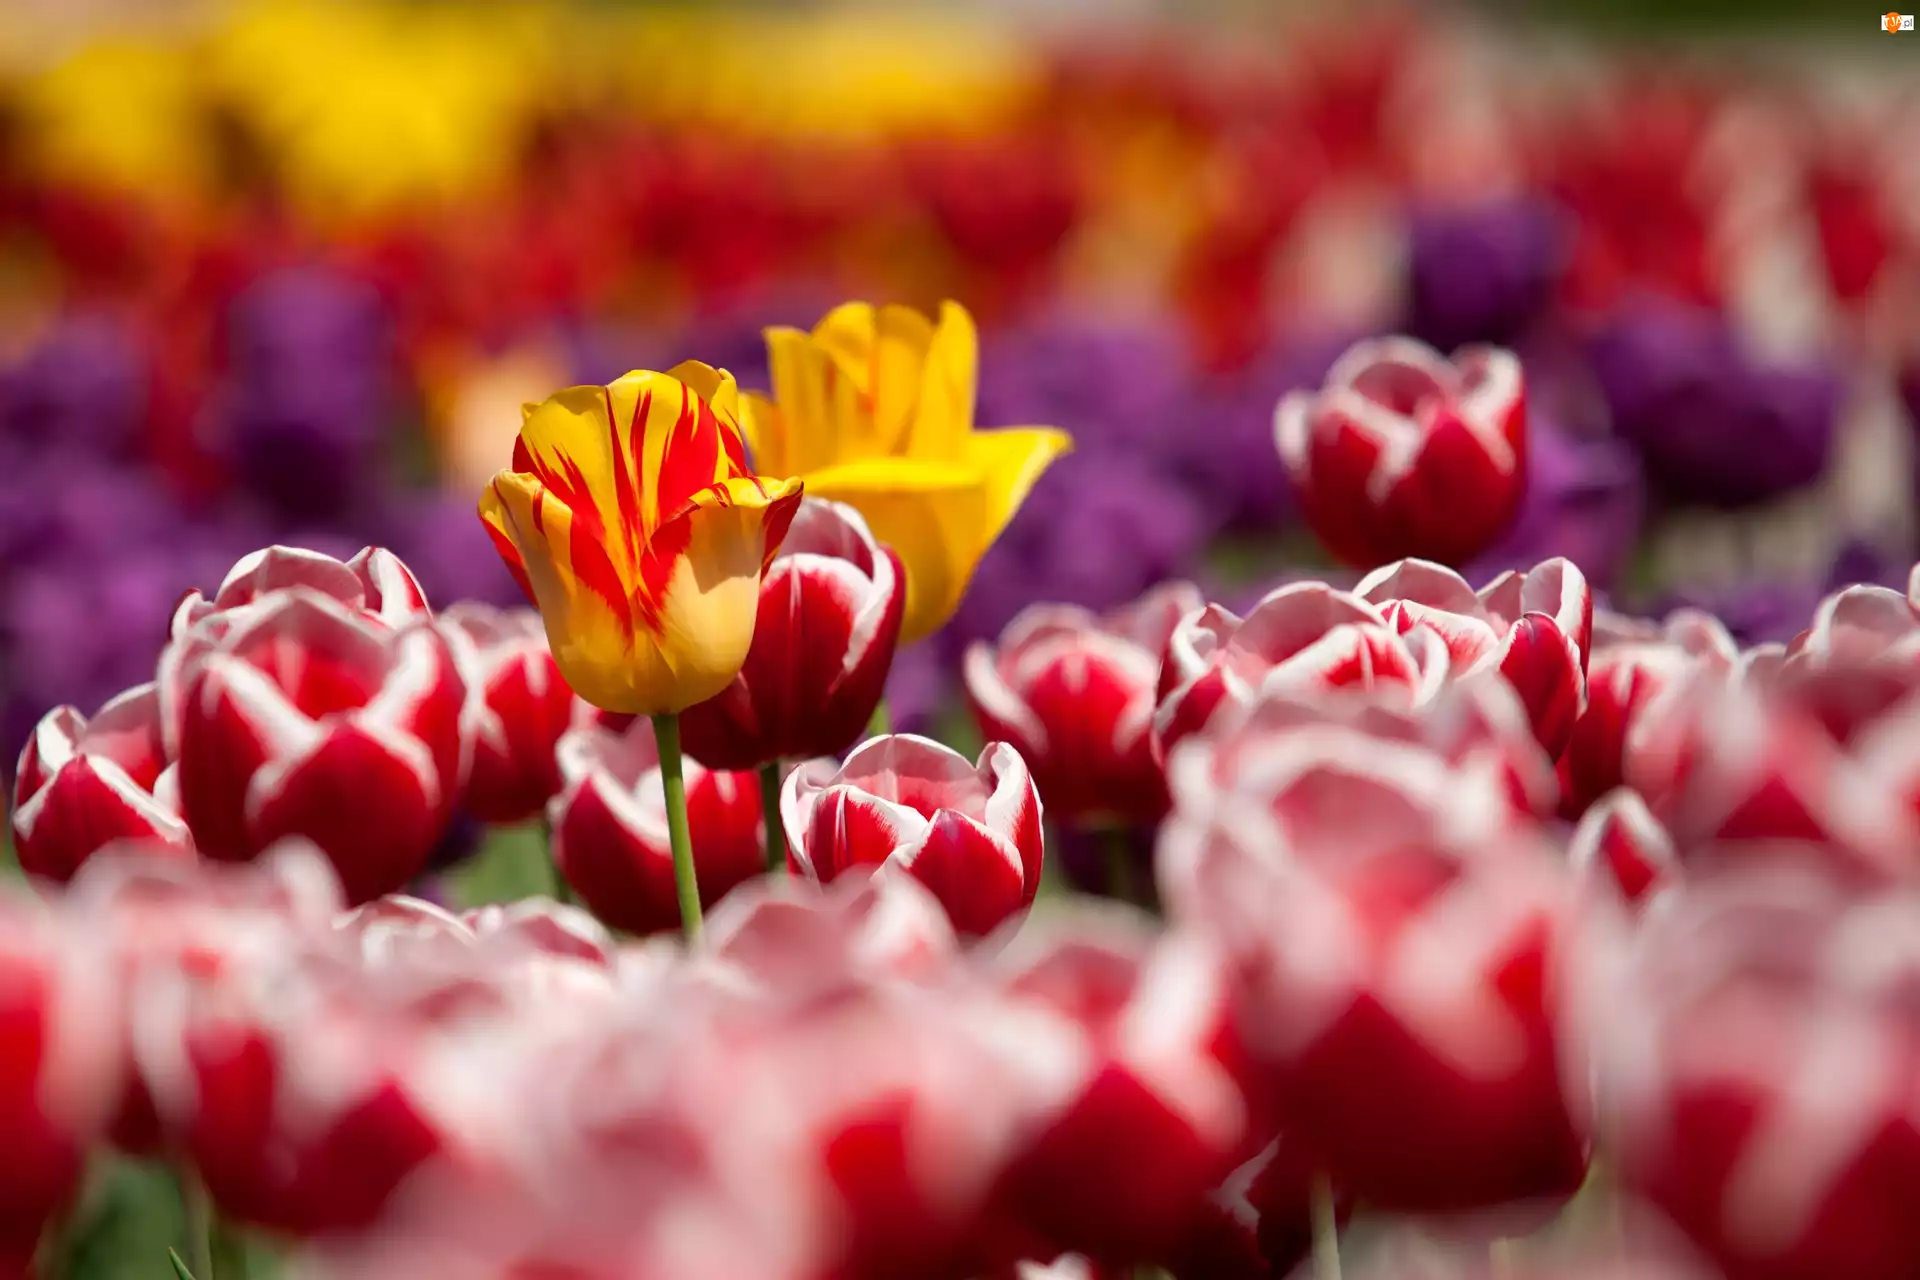 Kwiaty, Tulipany, Żółte, Czerwone